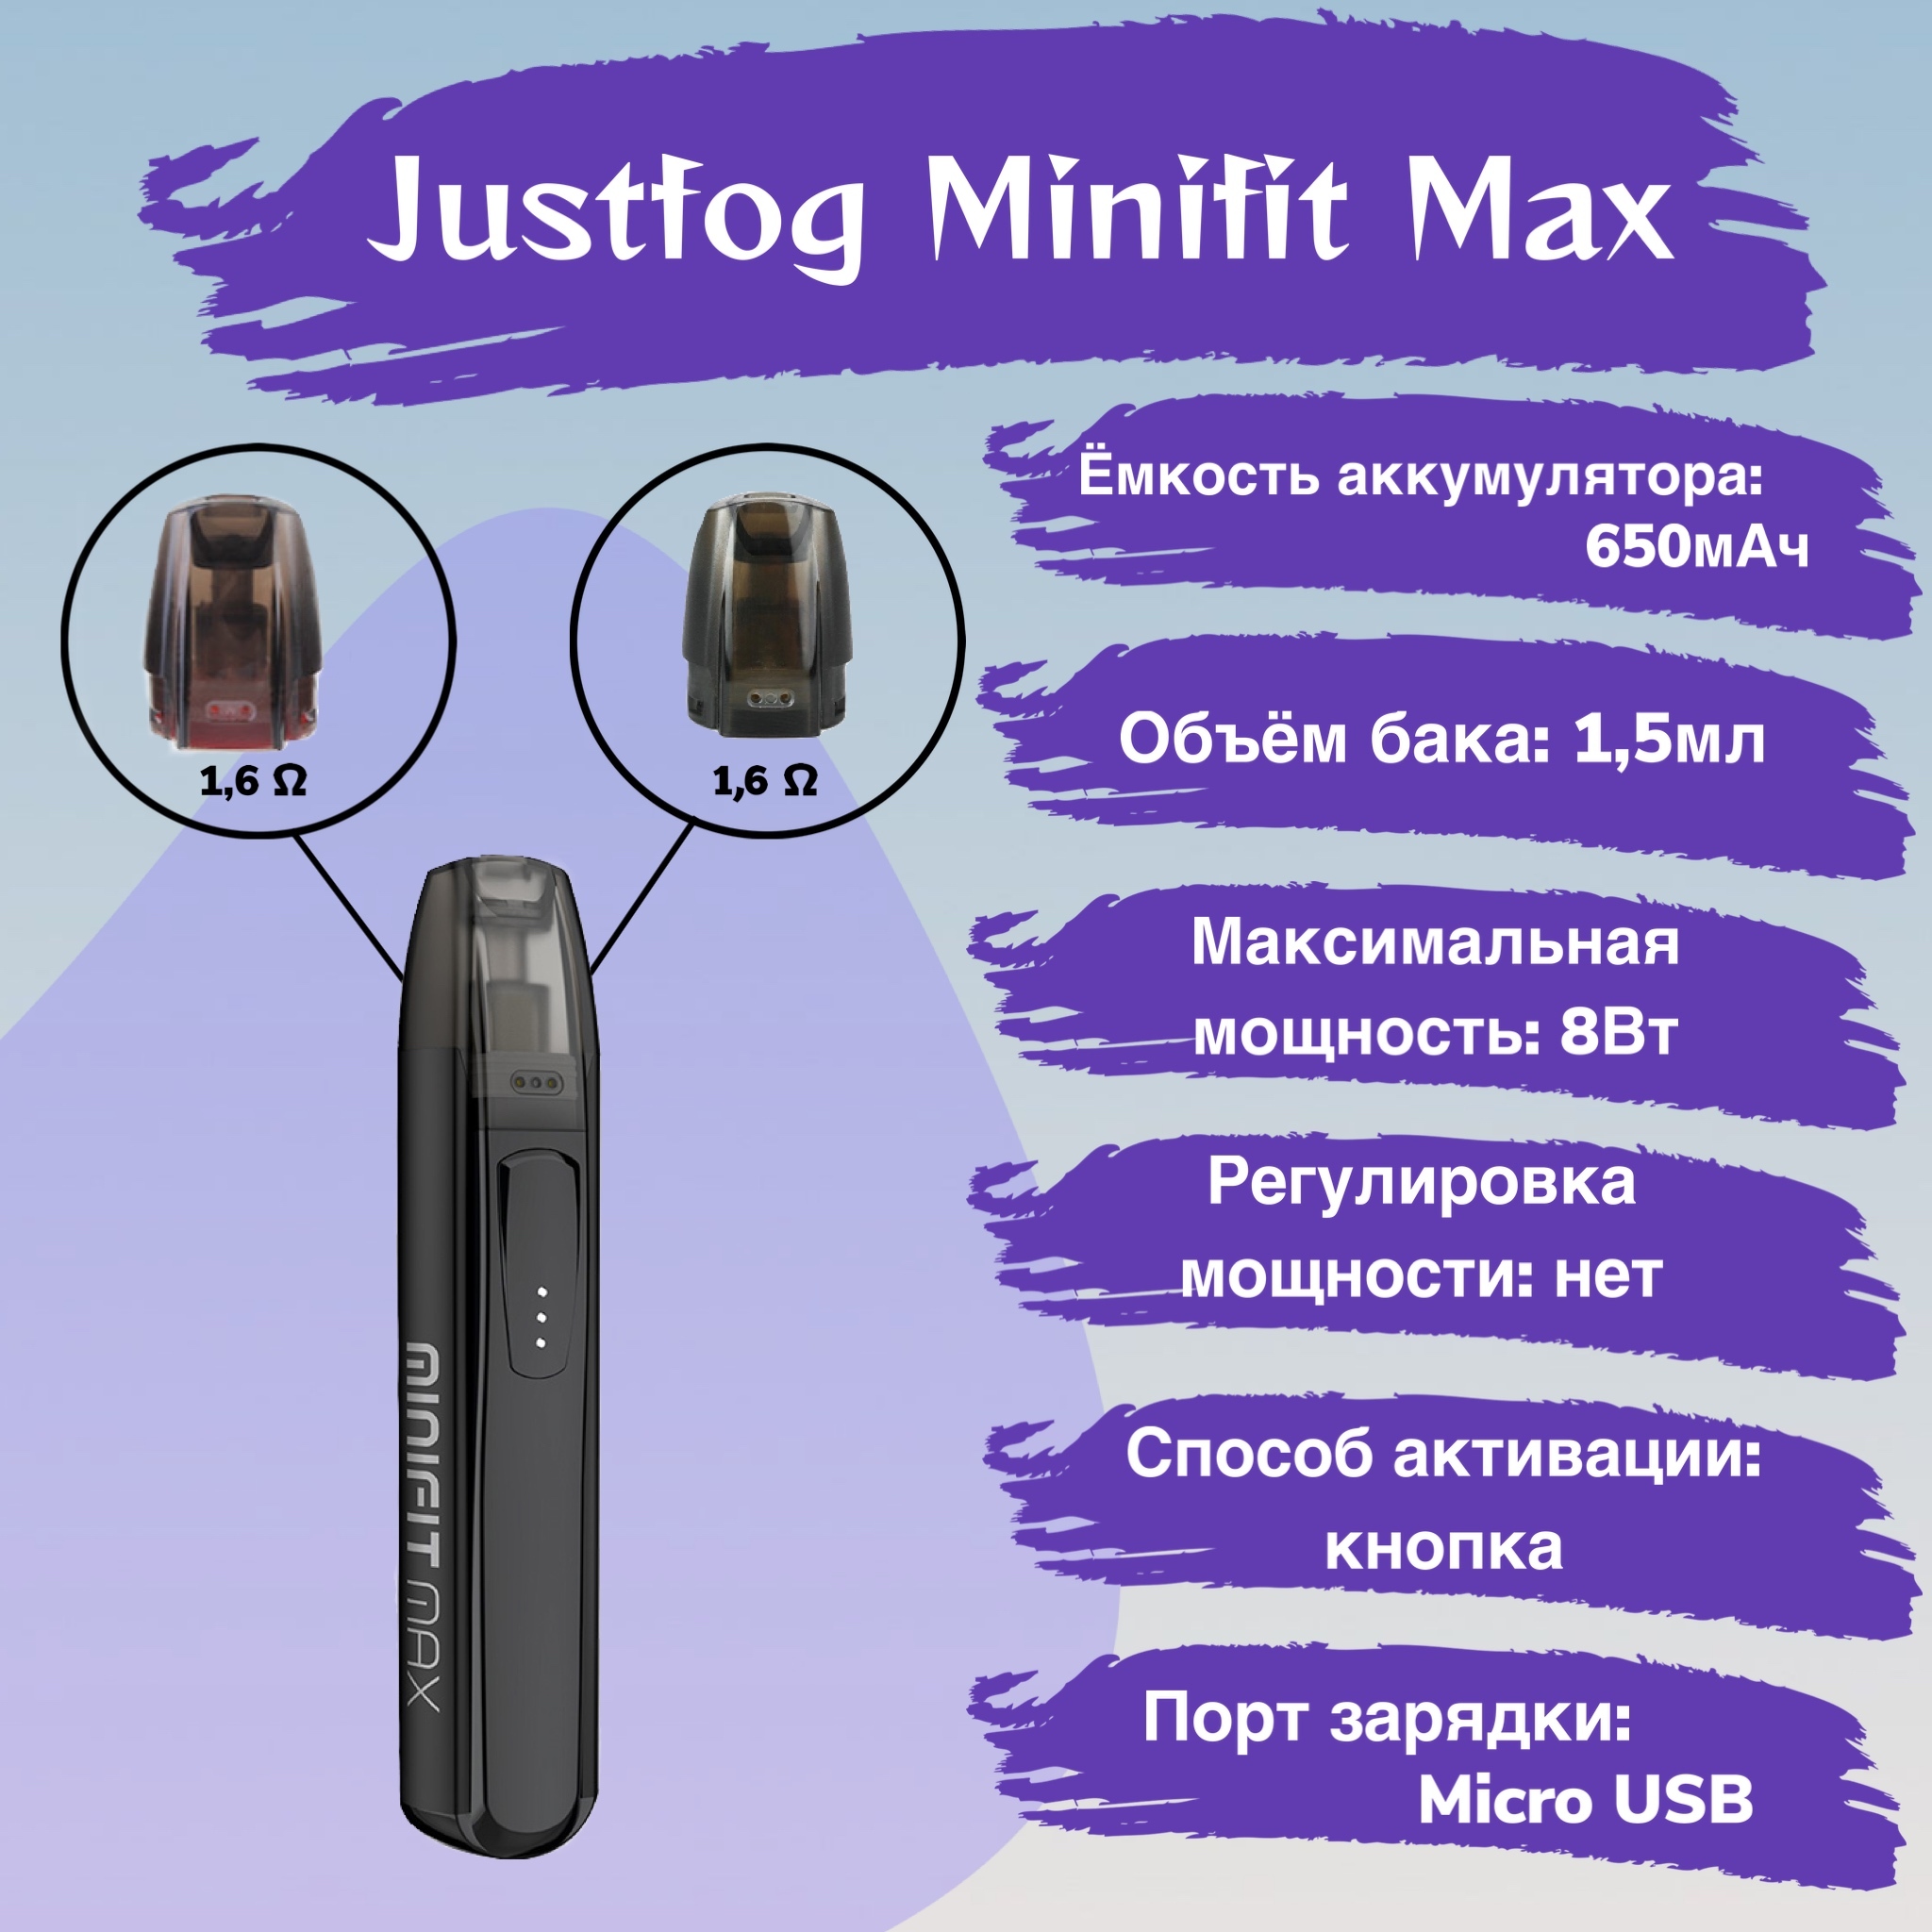 Минифит ватт. Электронная сигарета МИНИФИТ Макс. Pod-система MINIFIT Max. MINIFIT Max Kit. Justfog MINIFIT Max Kit.